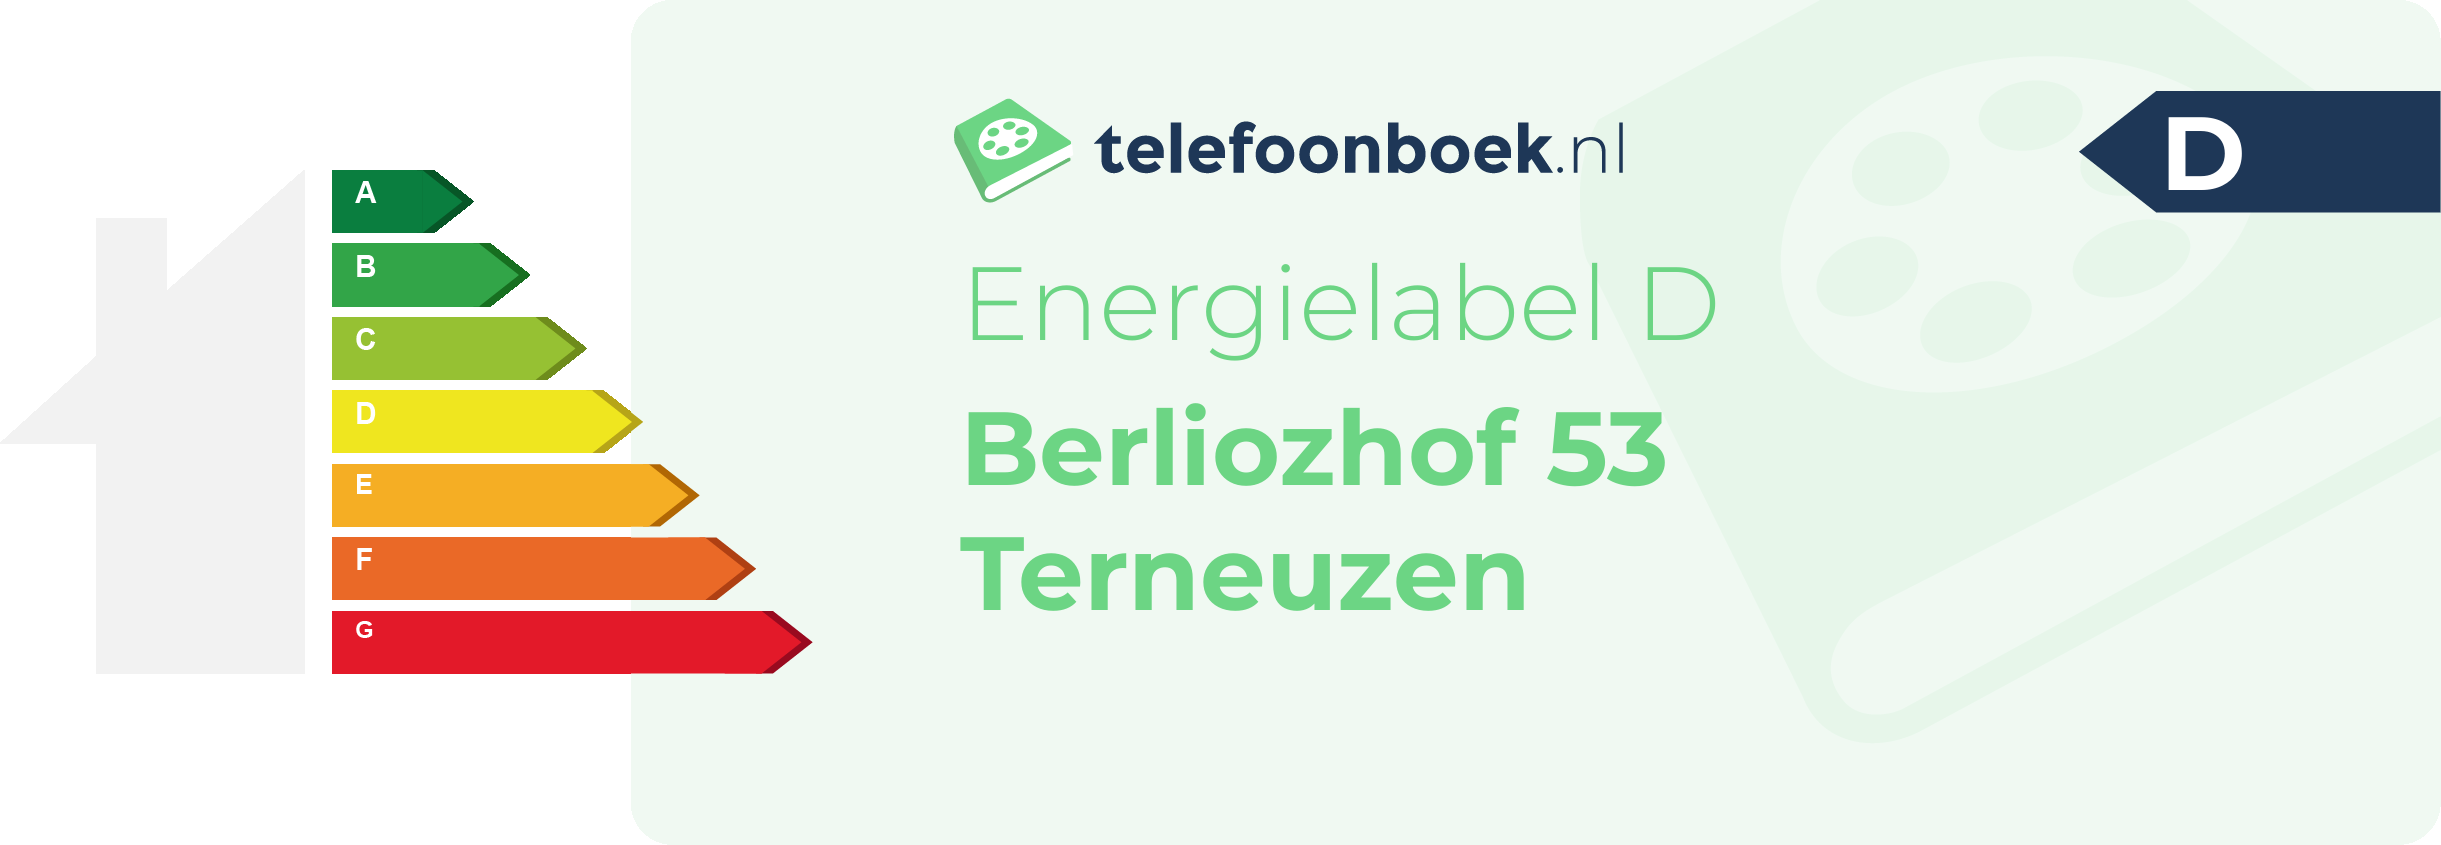 Energielabel Berliozhof 53 Terneuzen